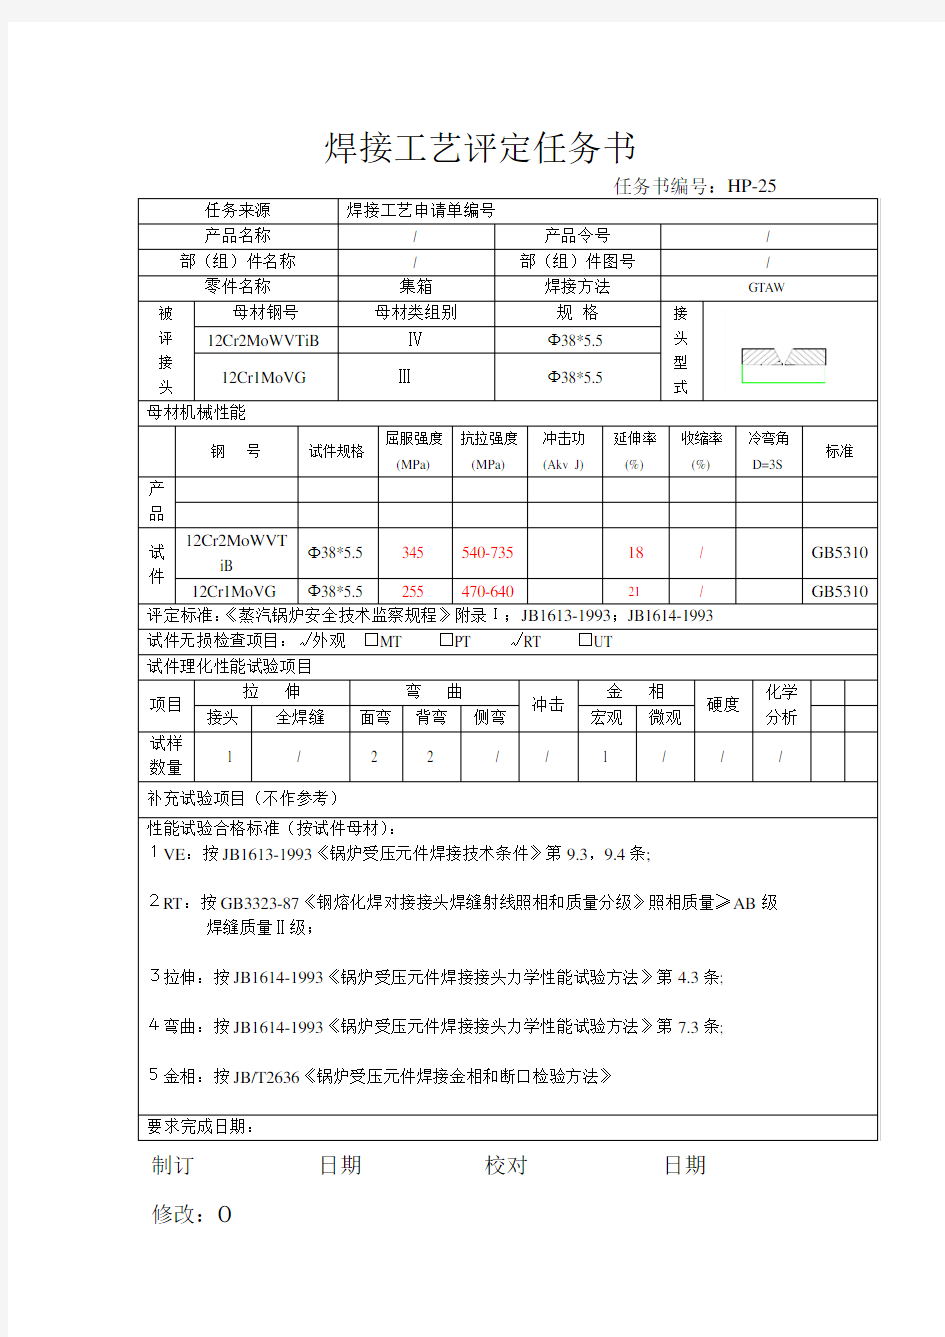 (工艺技术)焊接工艺评定报告HP5